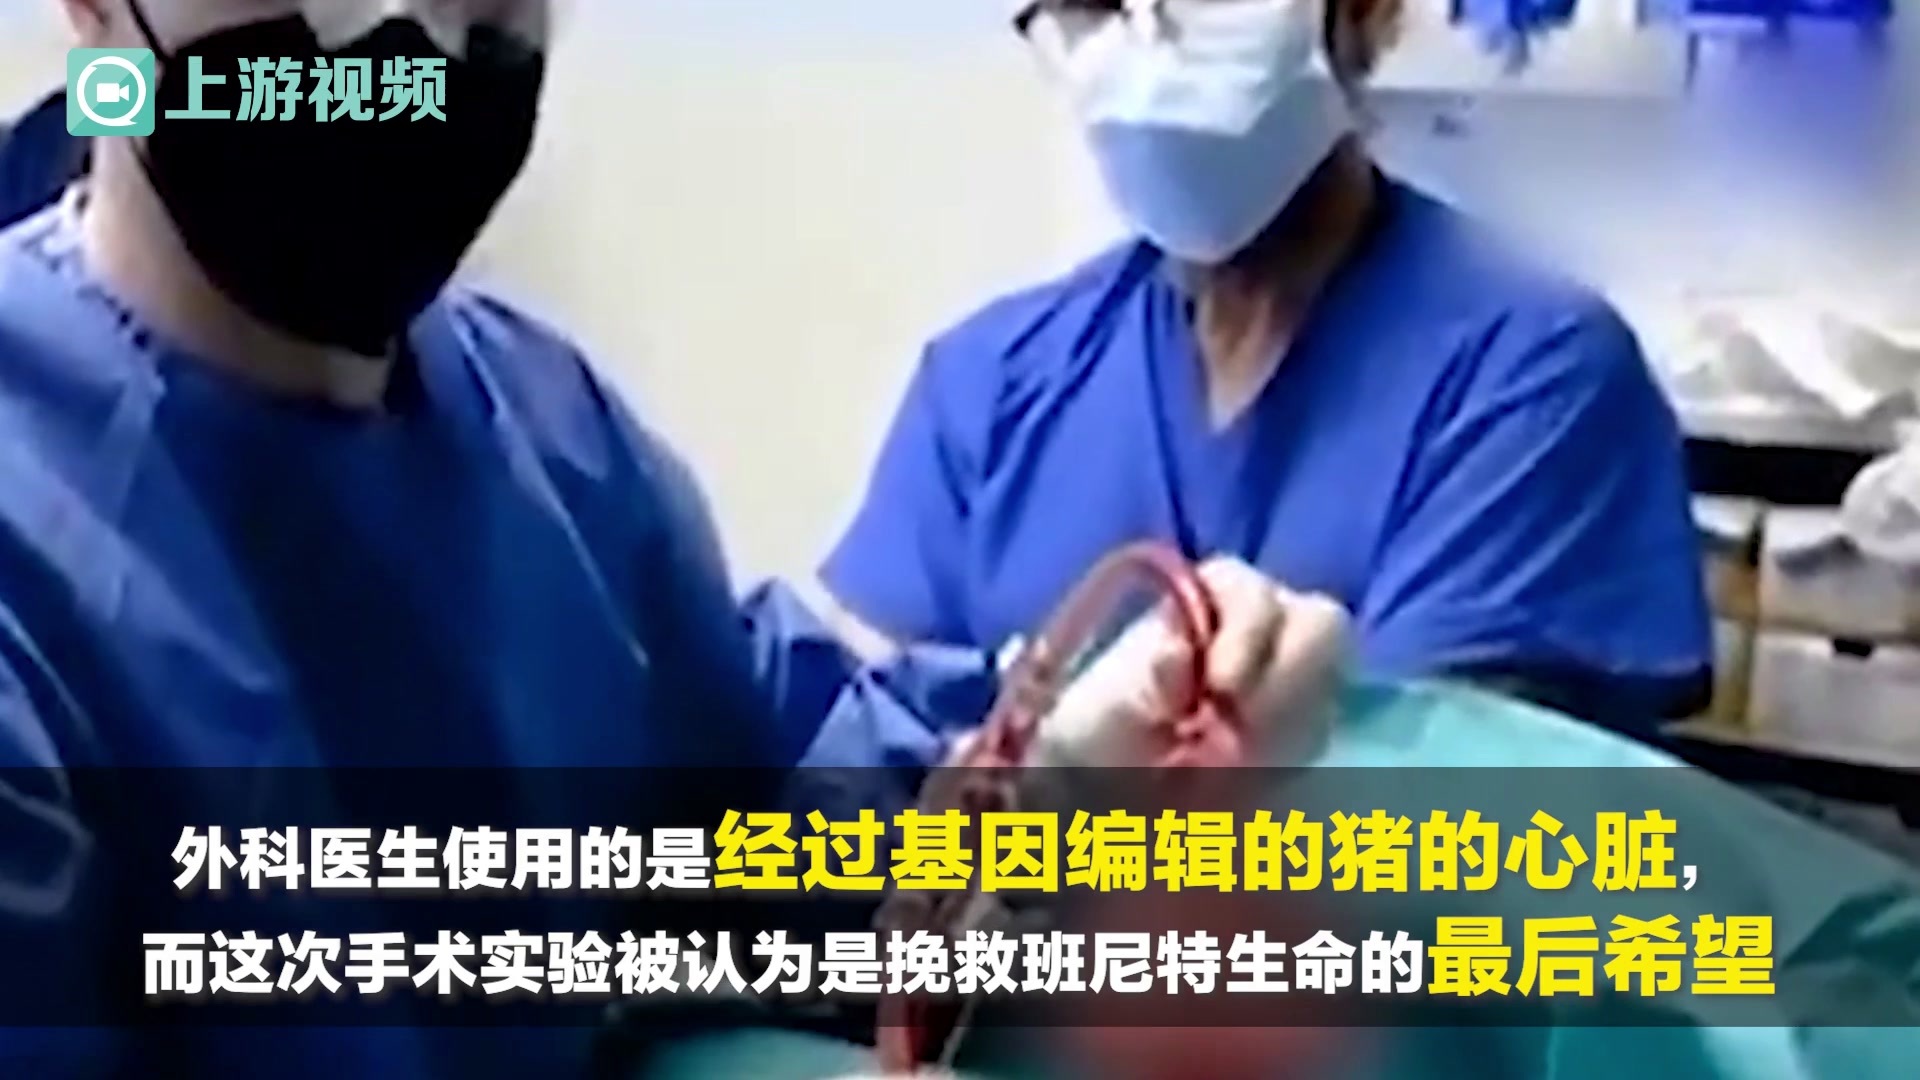 为无数病患者修补“破碎的心”，他让世界听到心脏移植“中国声音” - 武汉市科学技术协会